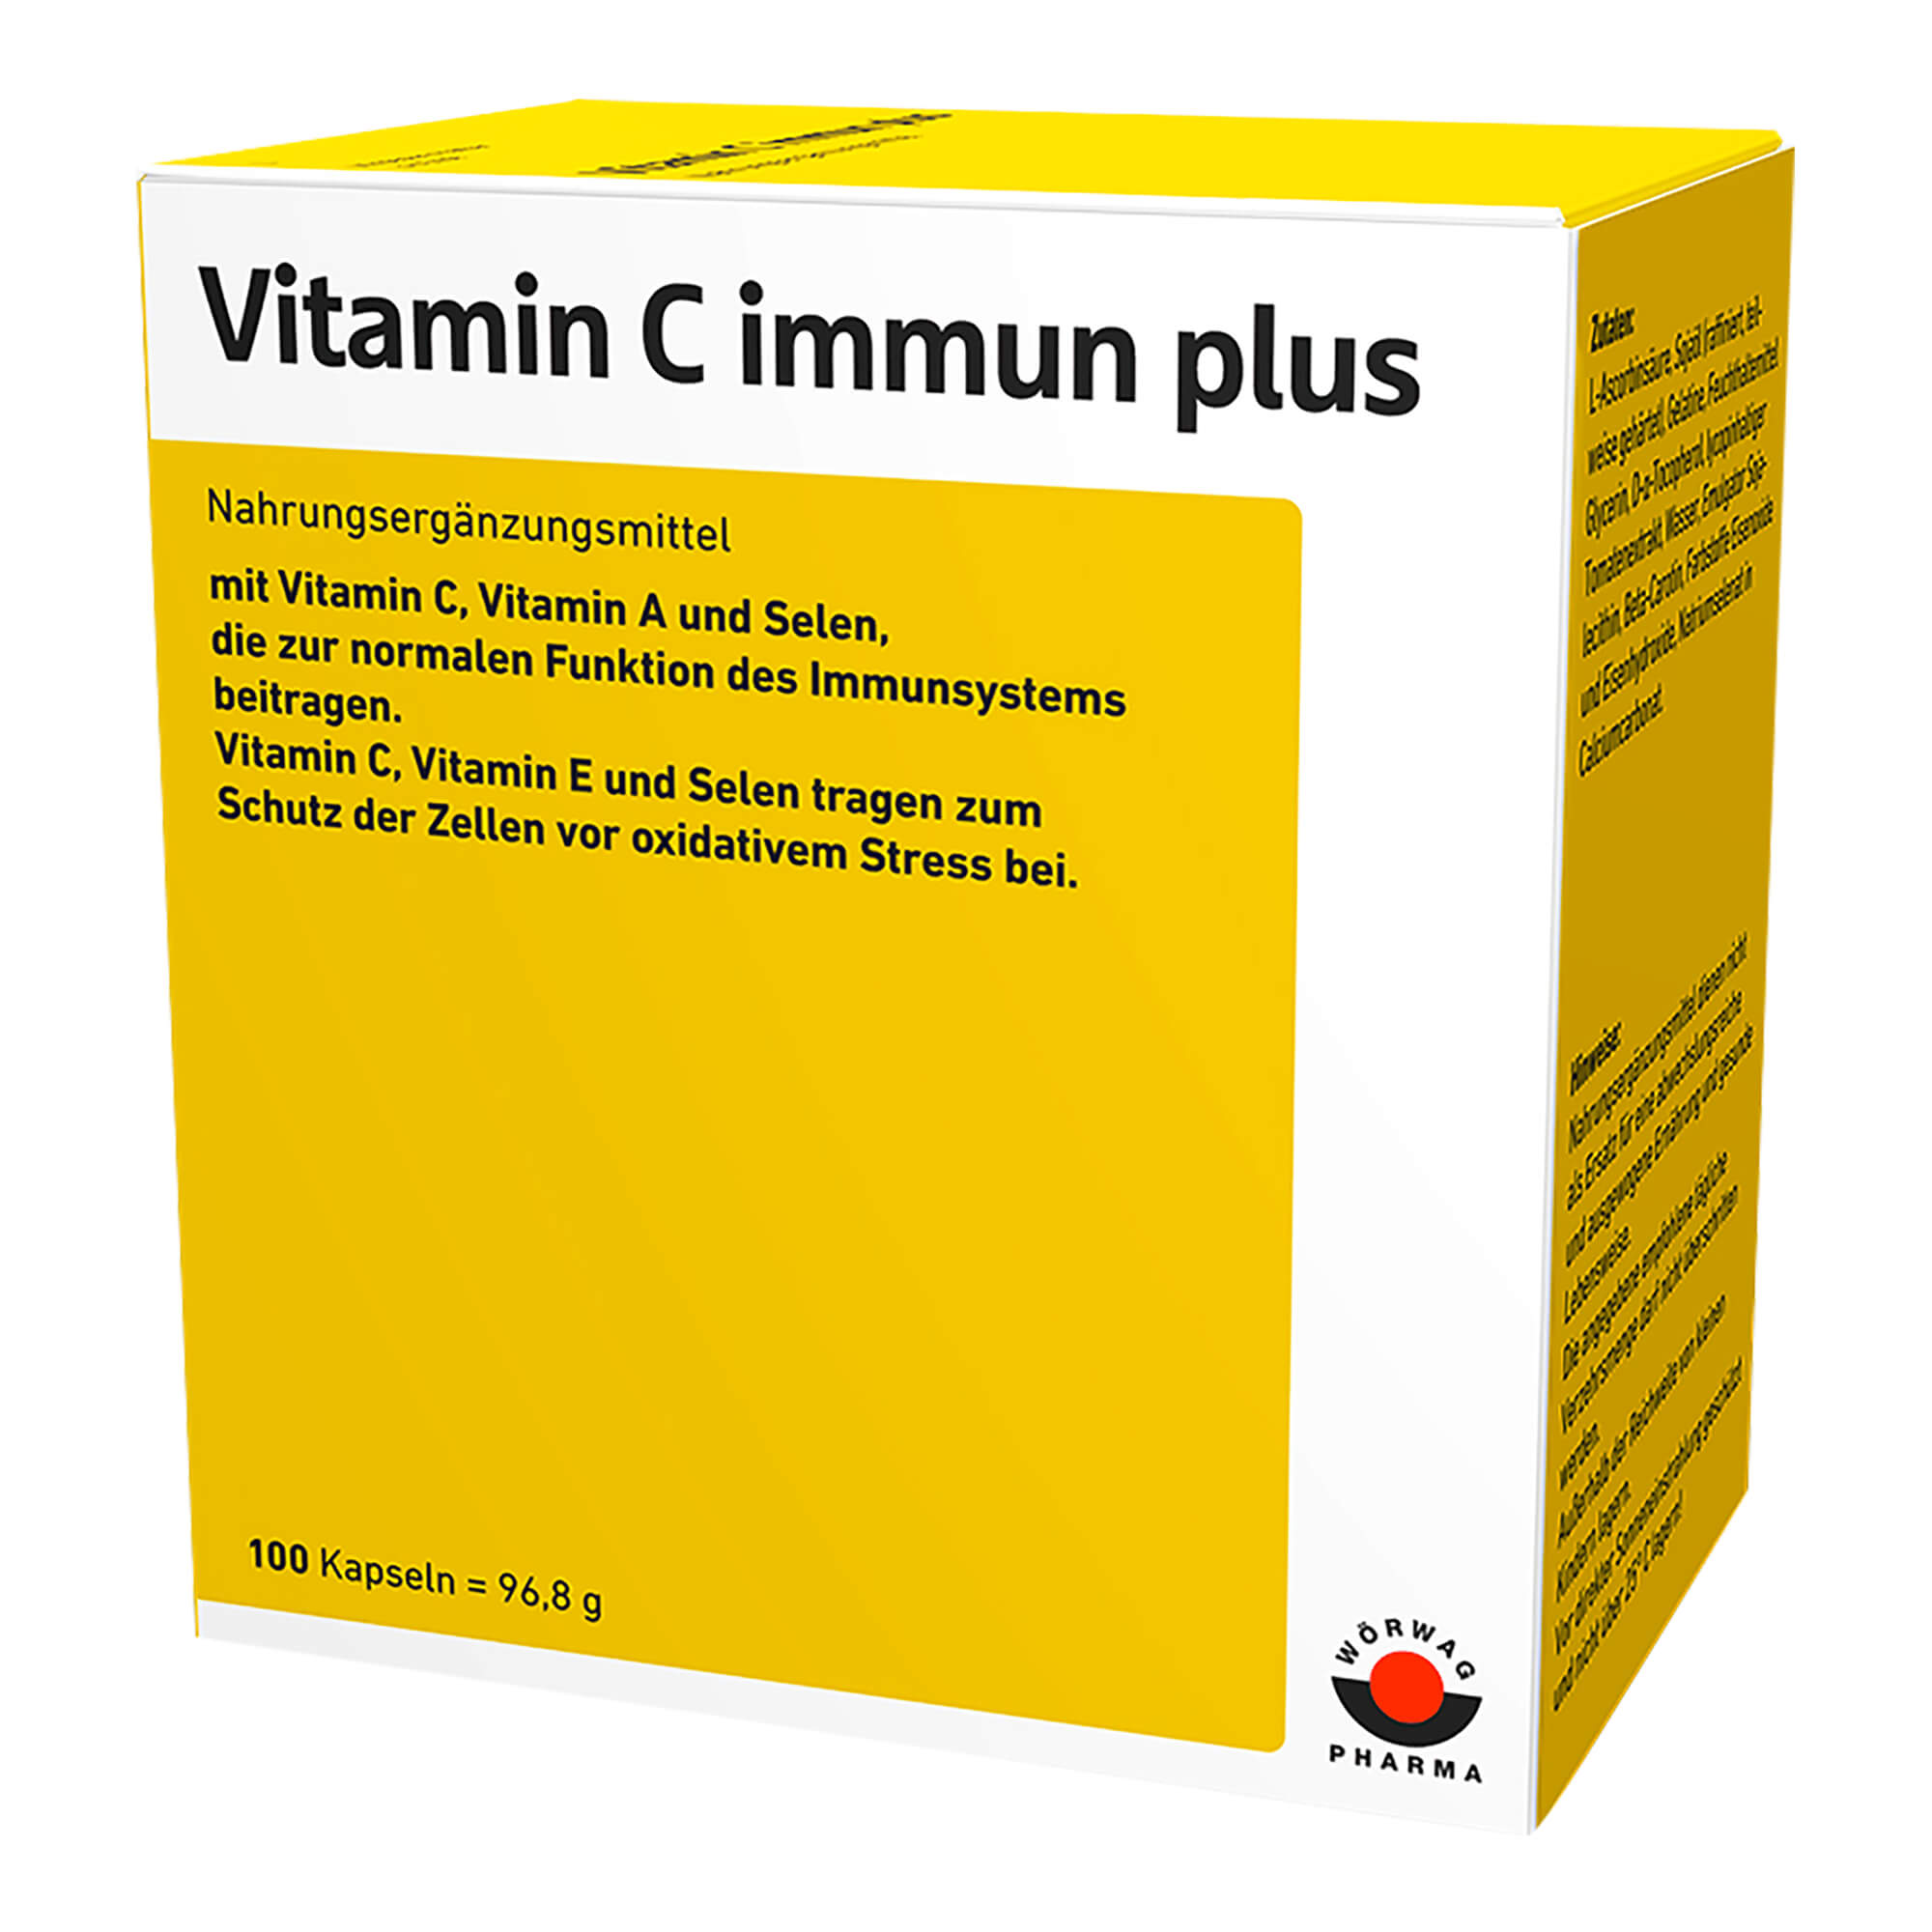 Nahrungsergänzungsmittel mit Vitamin C, Vitamin A und Selen.